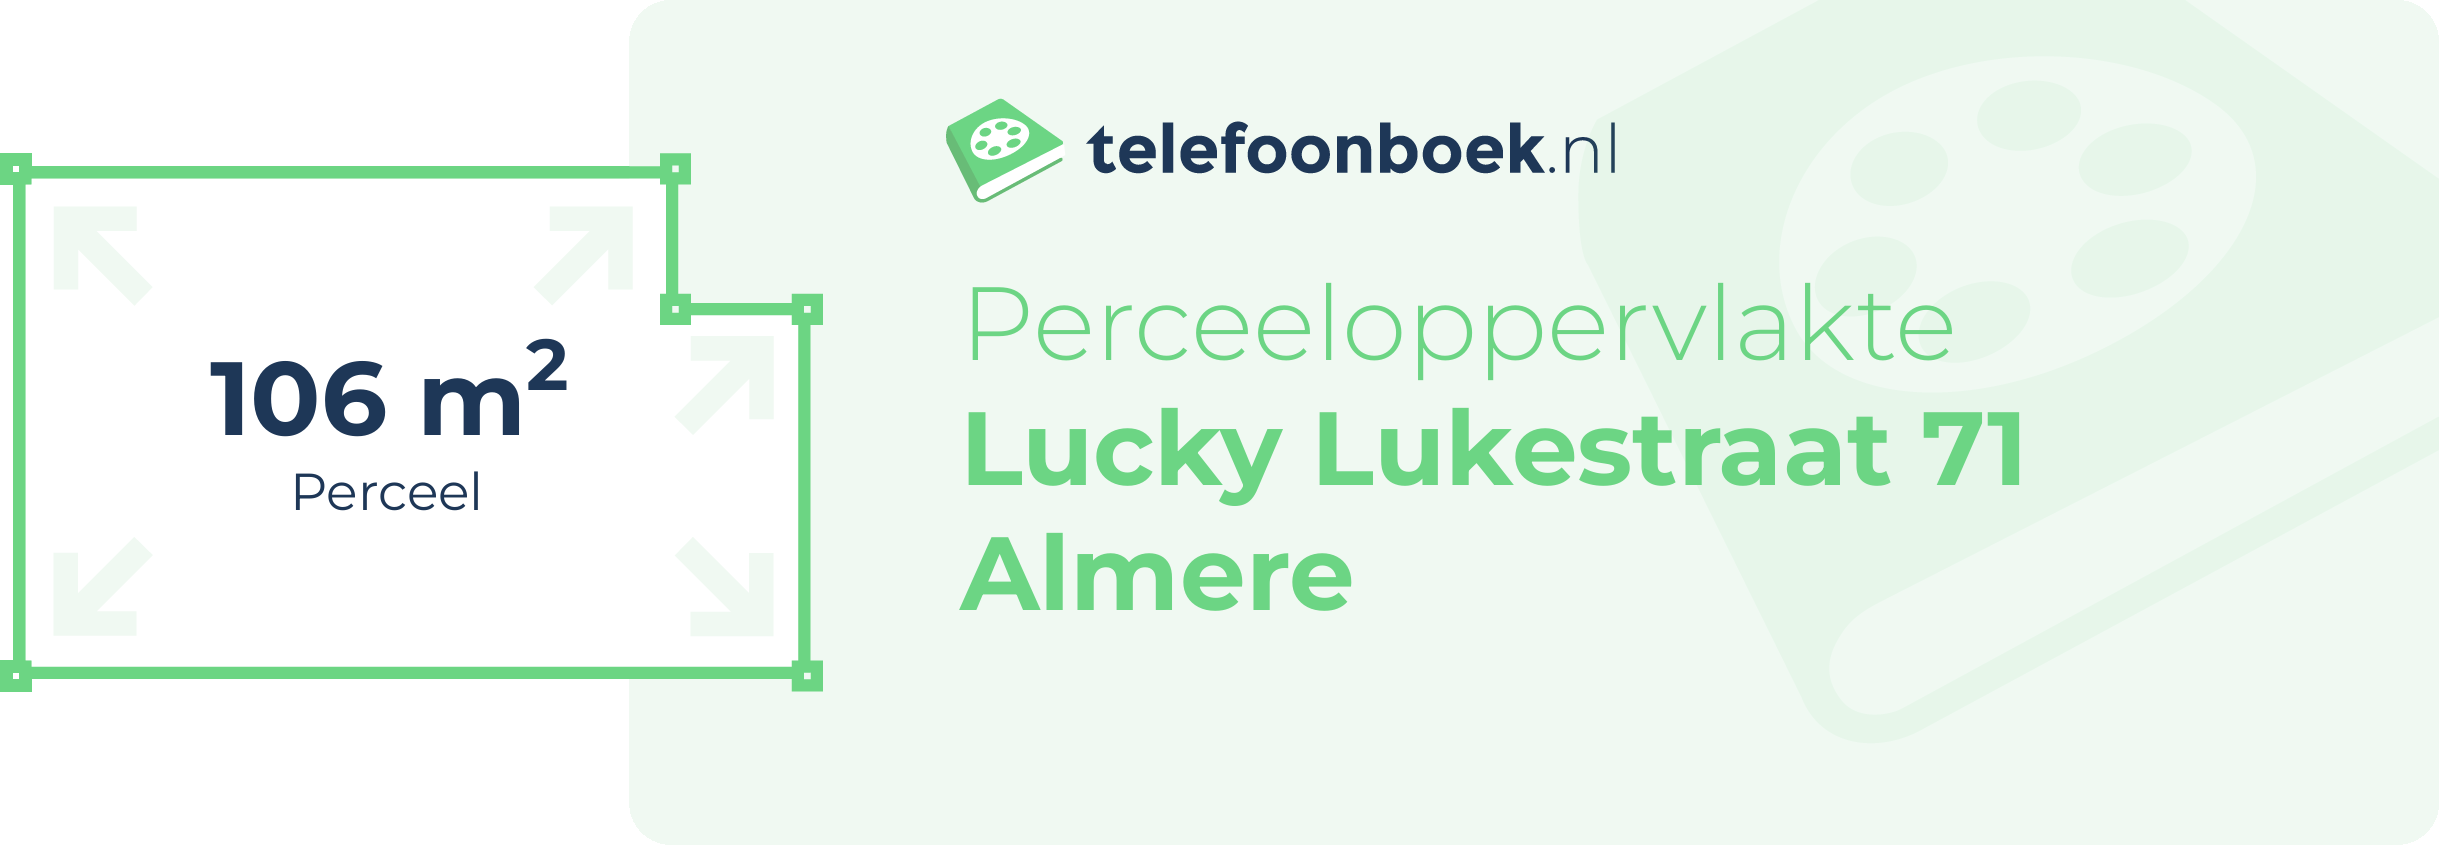 Perceeloppervlakte Lucky Lukestraat 71 Almere